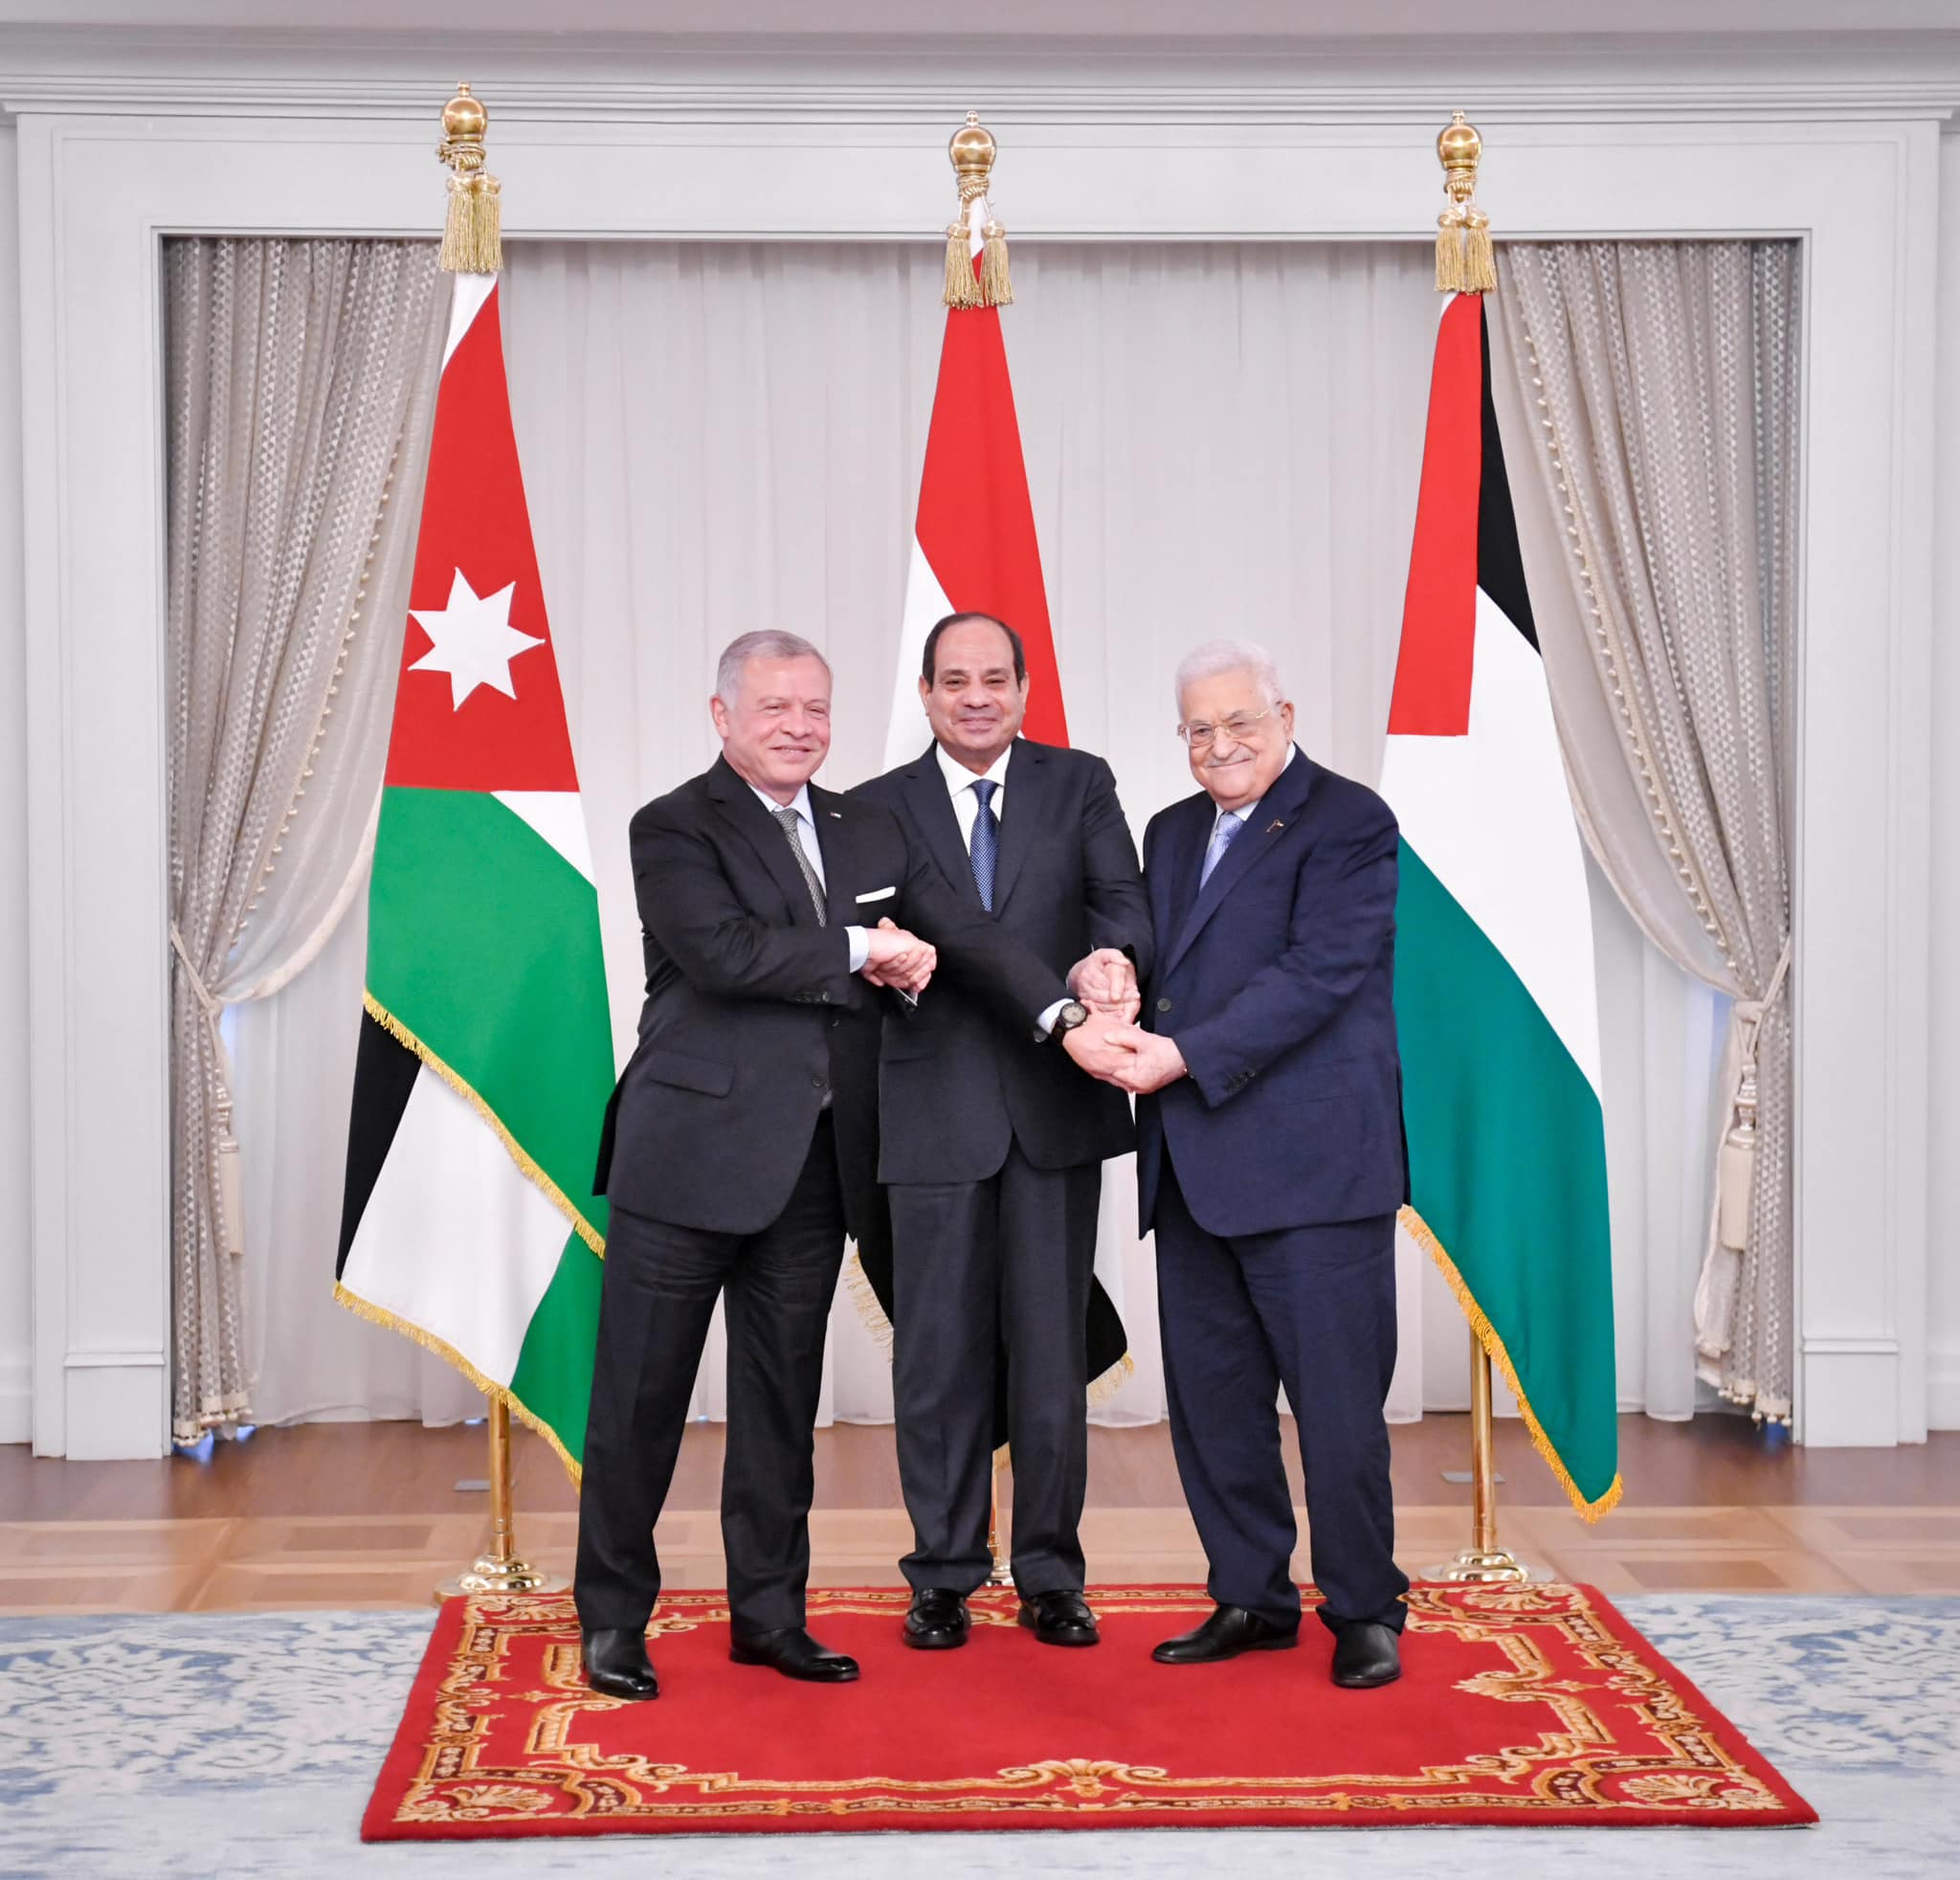 الرئيس المصري والعاهل الأردني مع الرئيس الفلسطيني